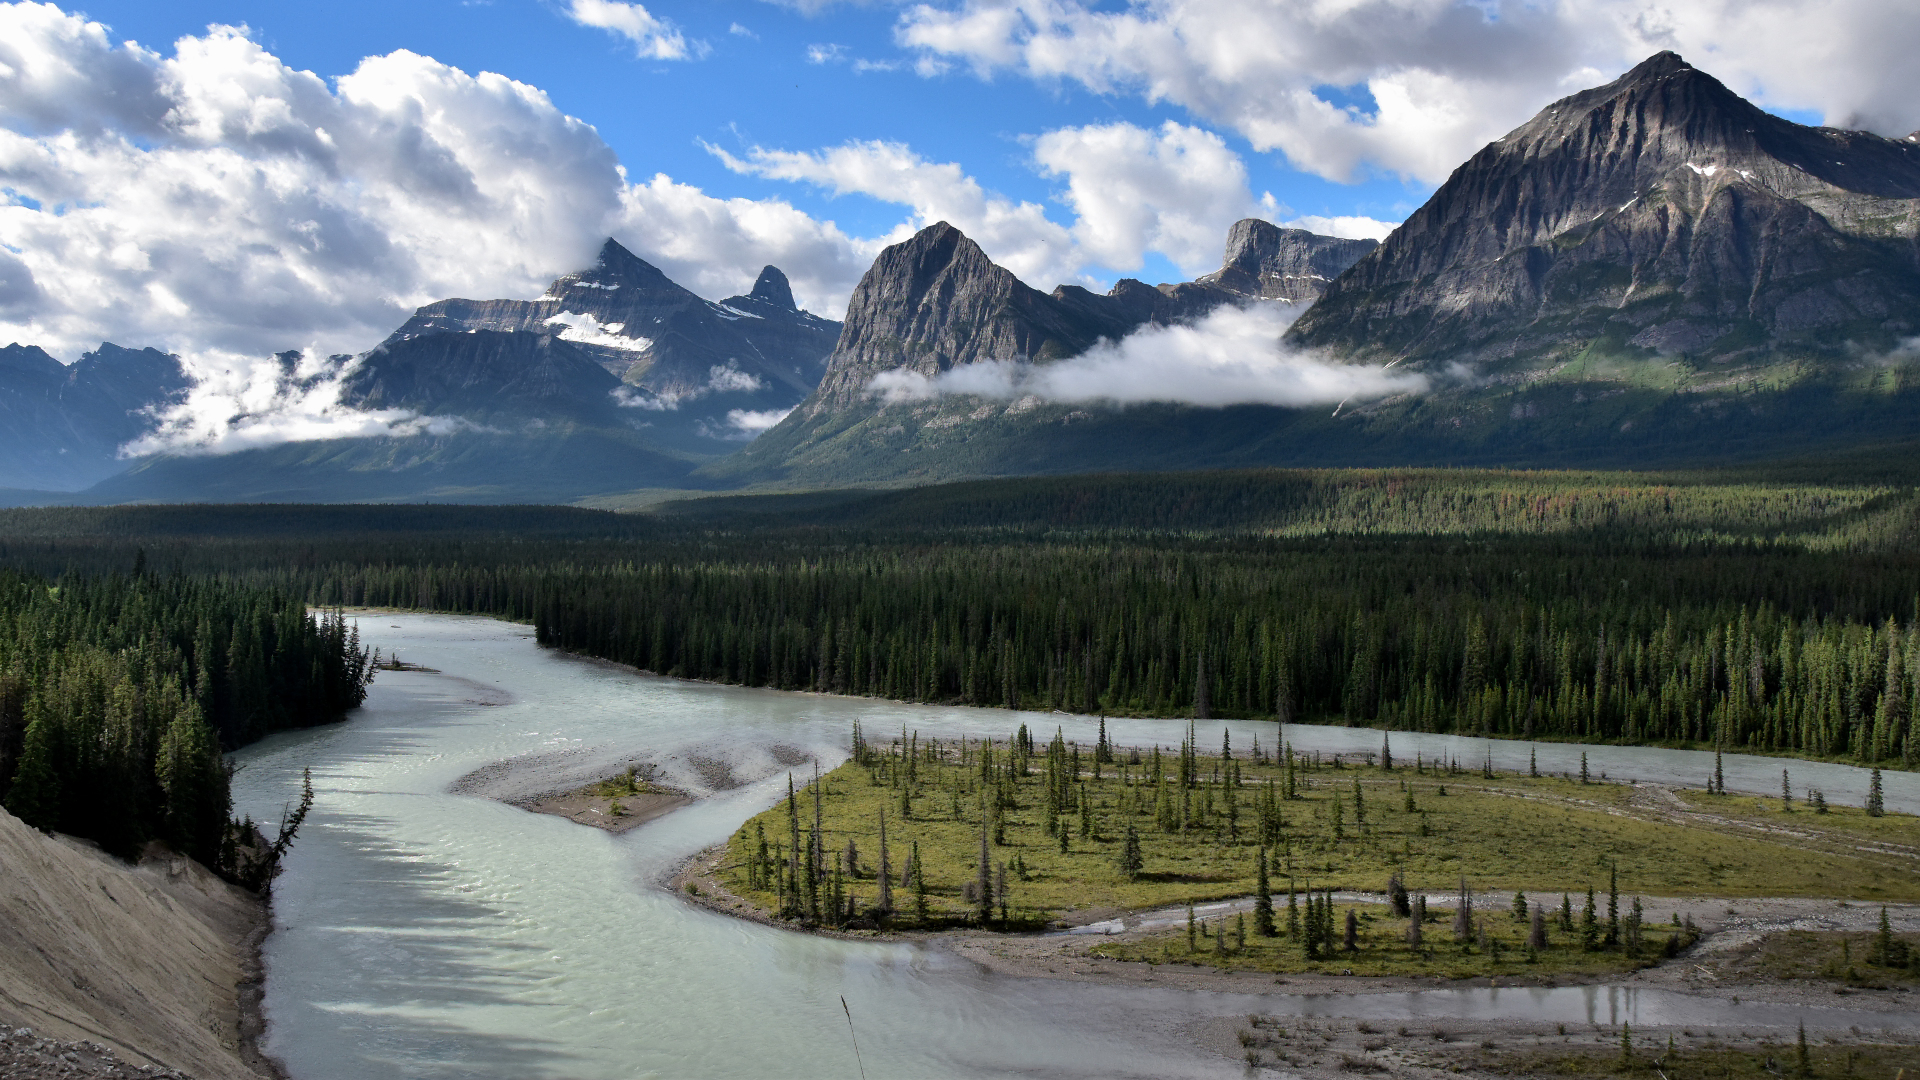 Athabaca River, fotografiert von Verena Schmidt auf ihrer Reise 2 Sommer in den kanadischen Rockies